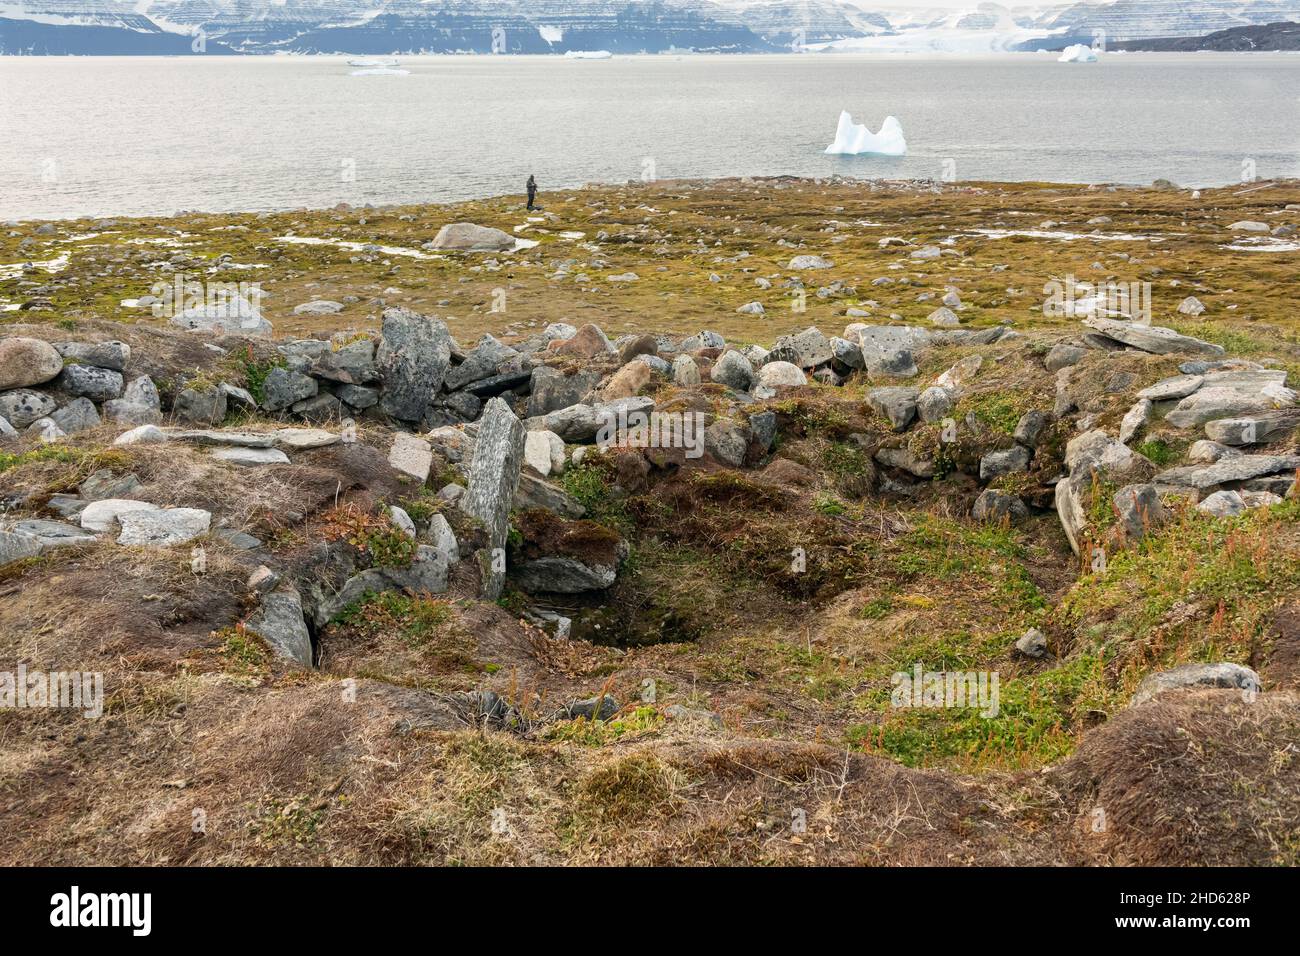 Sito storico del villaggio di Thule con case invernali in roccia e erba sintetica e ingressi a basso livello, Danmark o, Forfjord, Scoresby Sund, Groenlandia Foto Stock